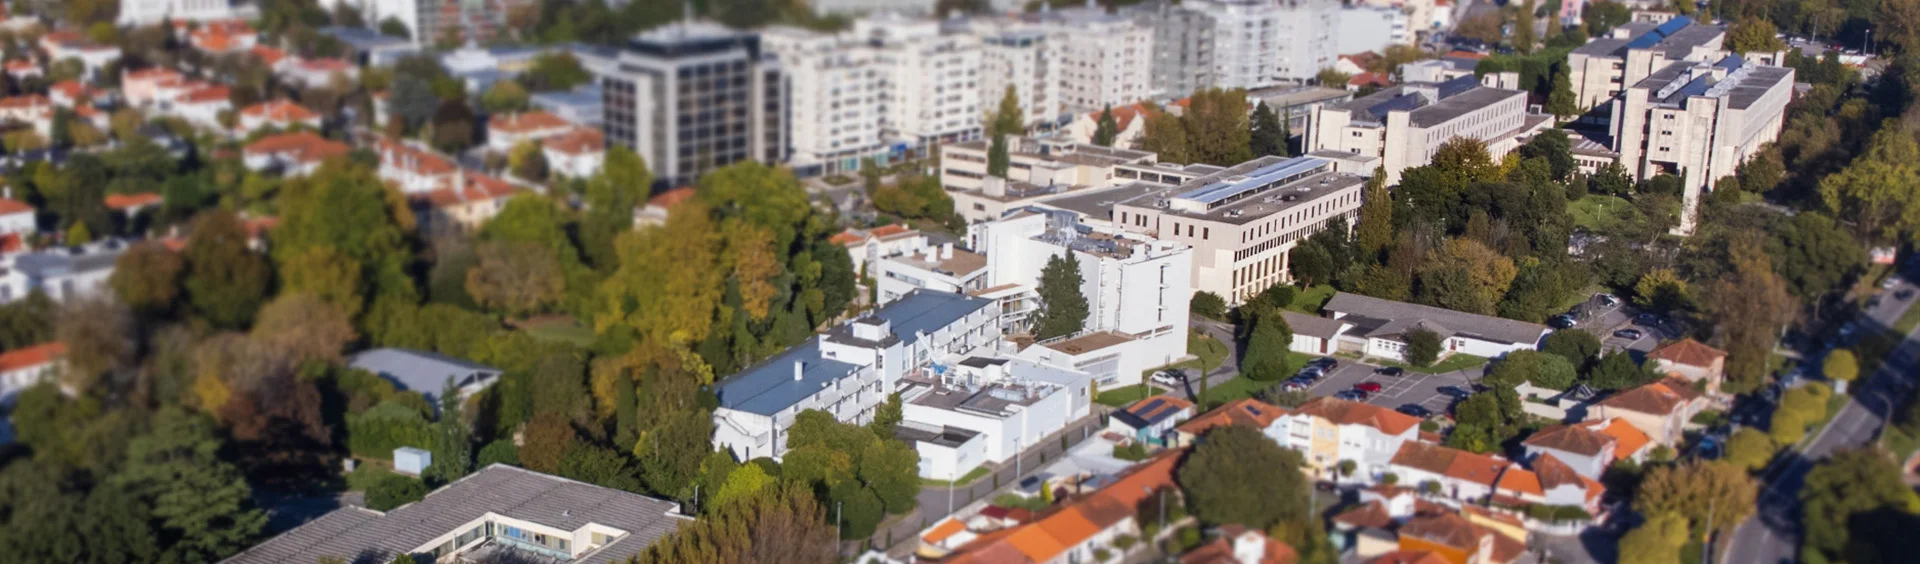 Vista aérea do campus da Faculdade de Ciências da Universidade do Porto, no Campo Alegre